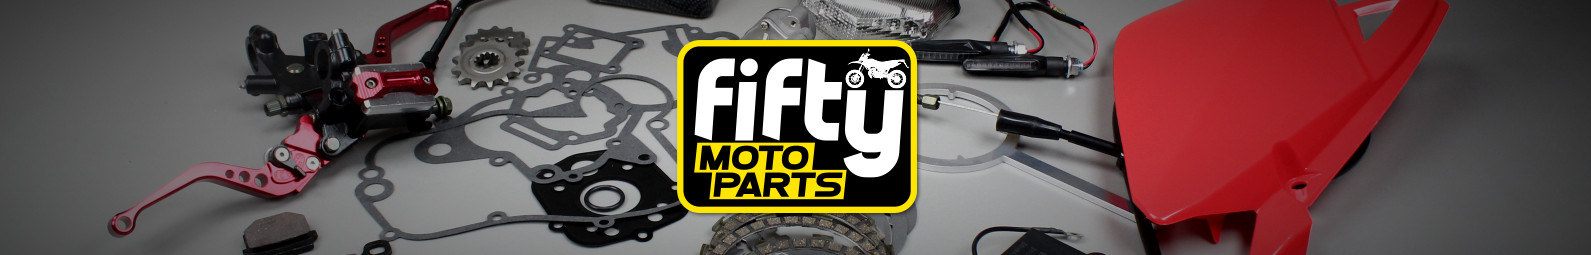 piezas de scooter de motocicleta Fifty moto parts